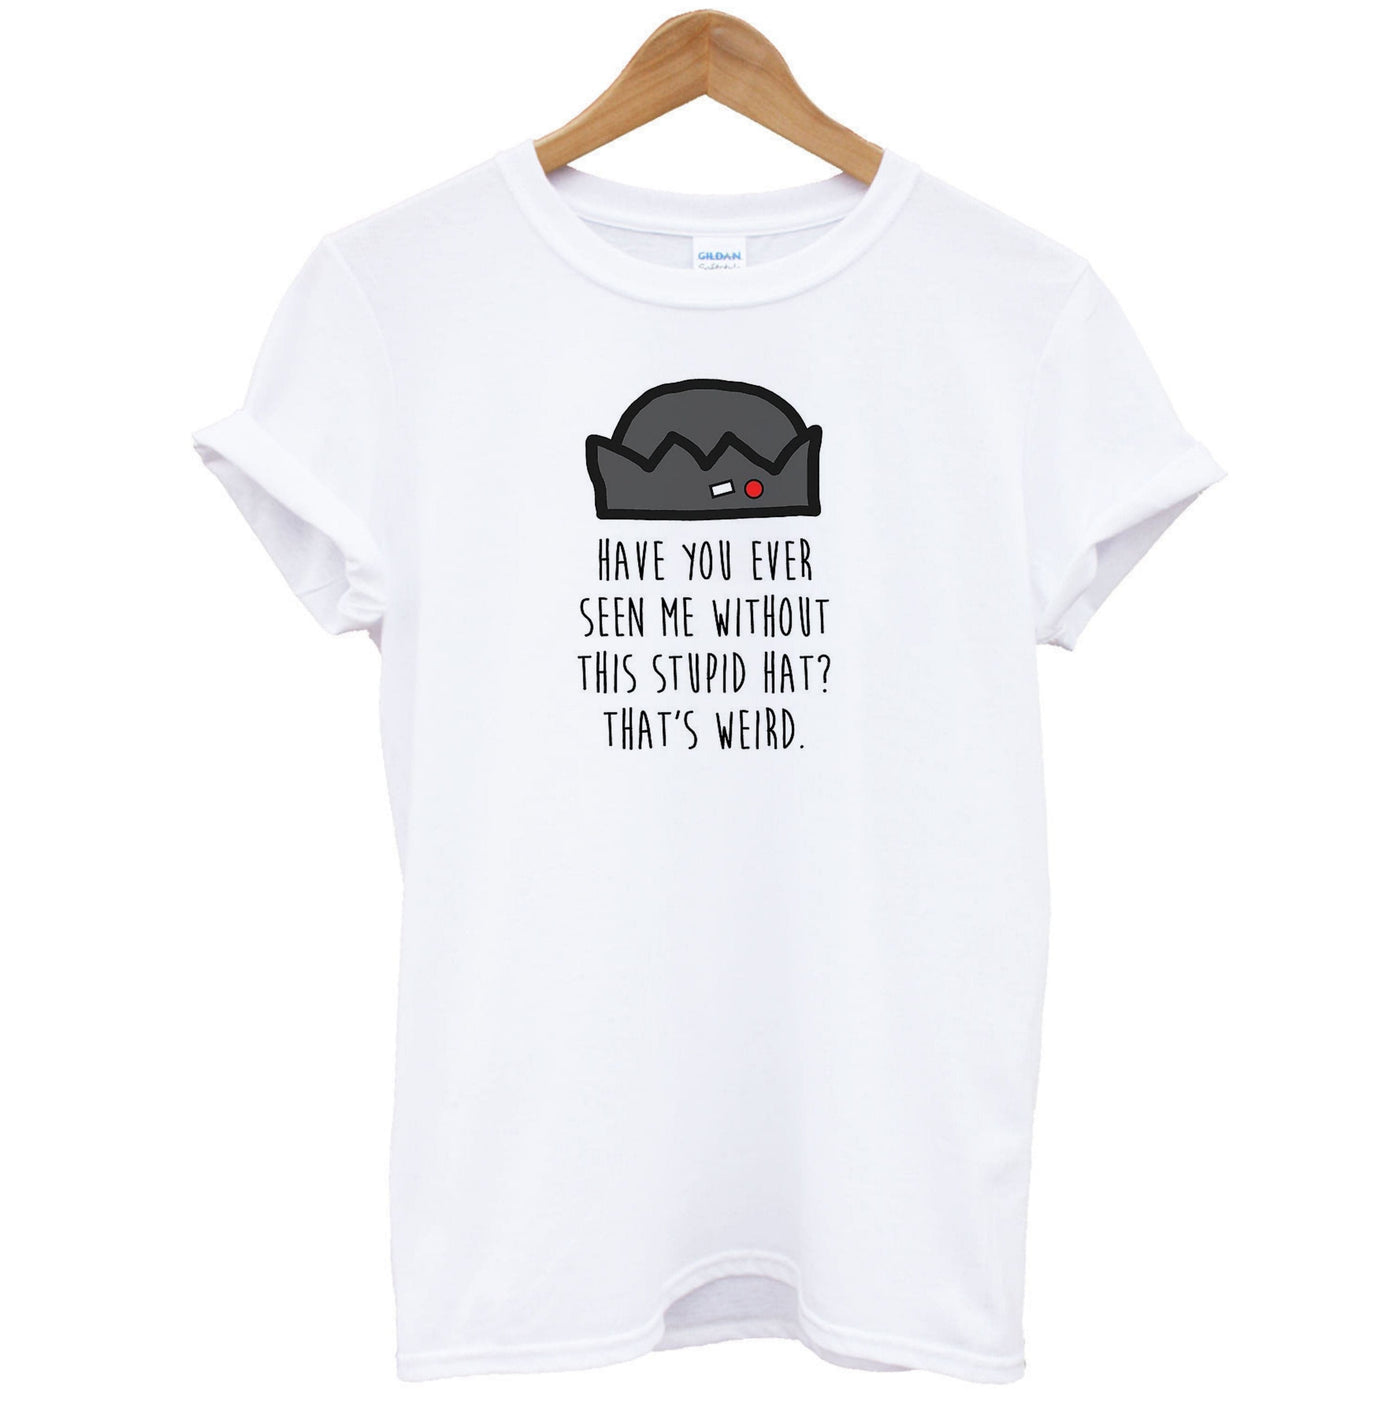 Jughead Jones - Stupid Hat - Riverdale T-Shirt